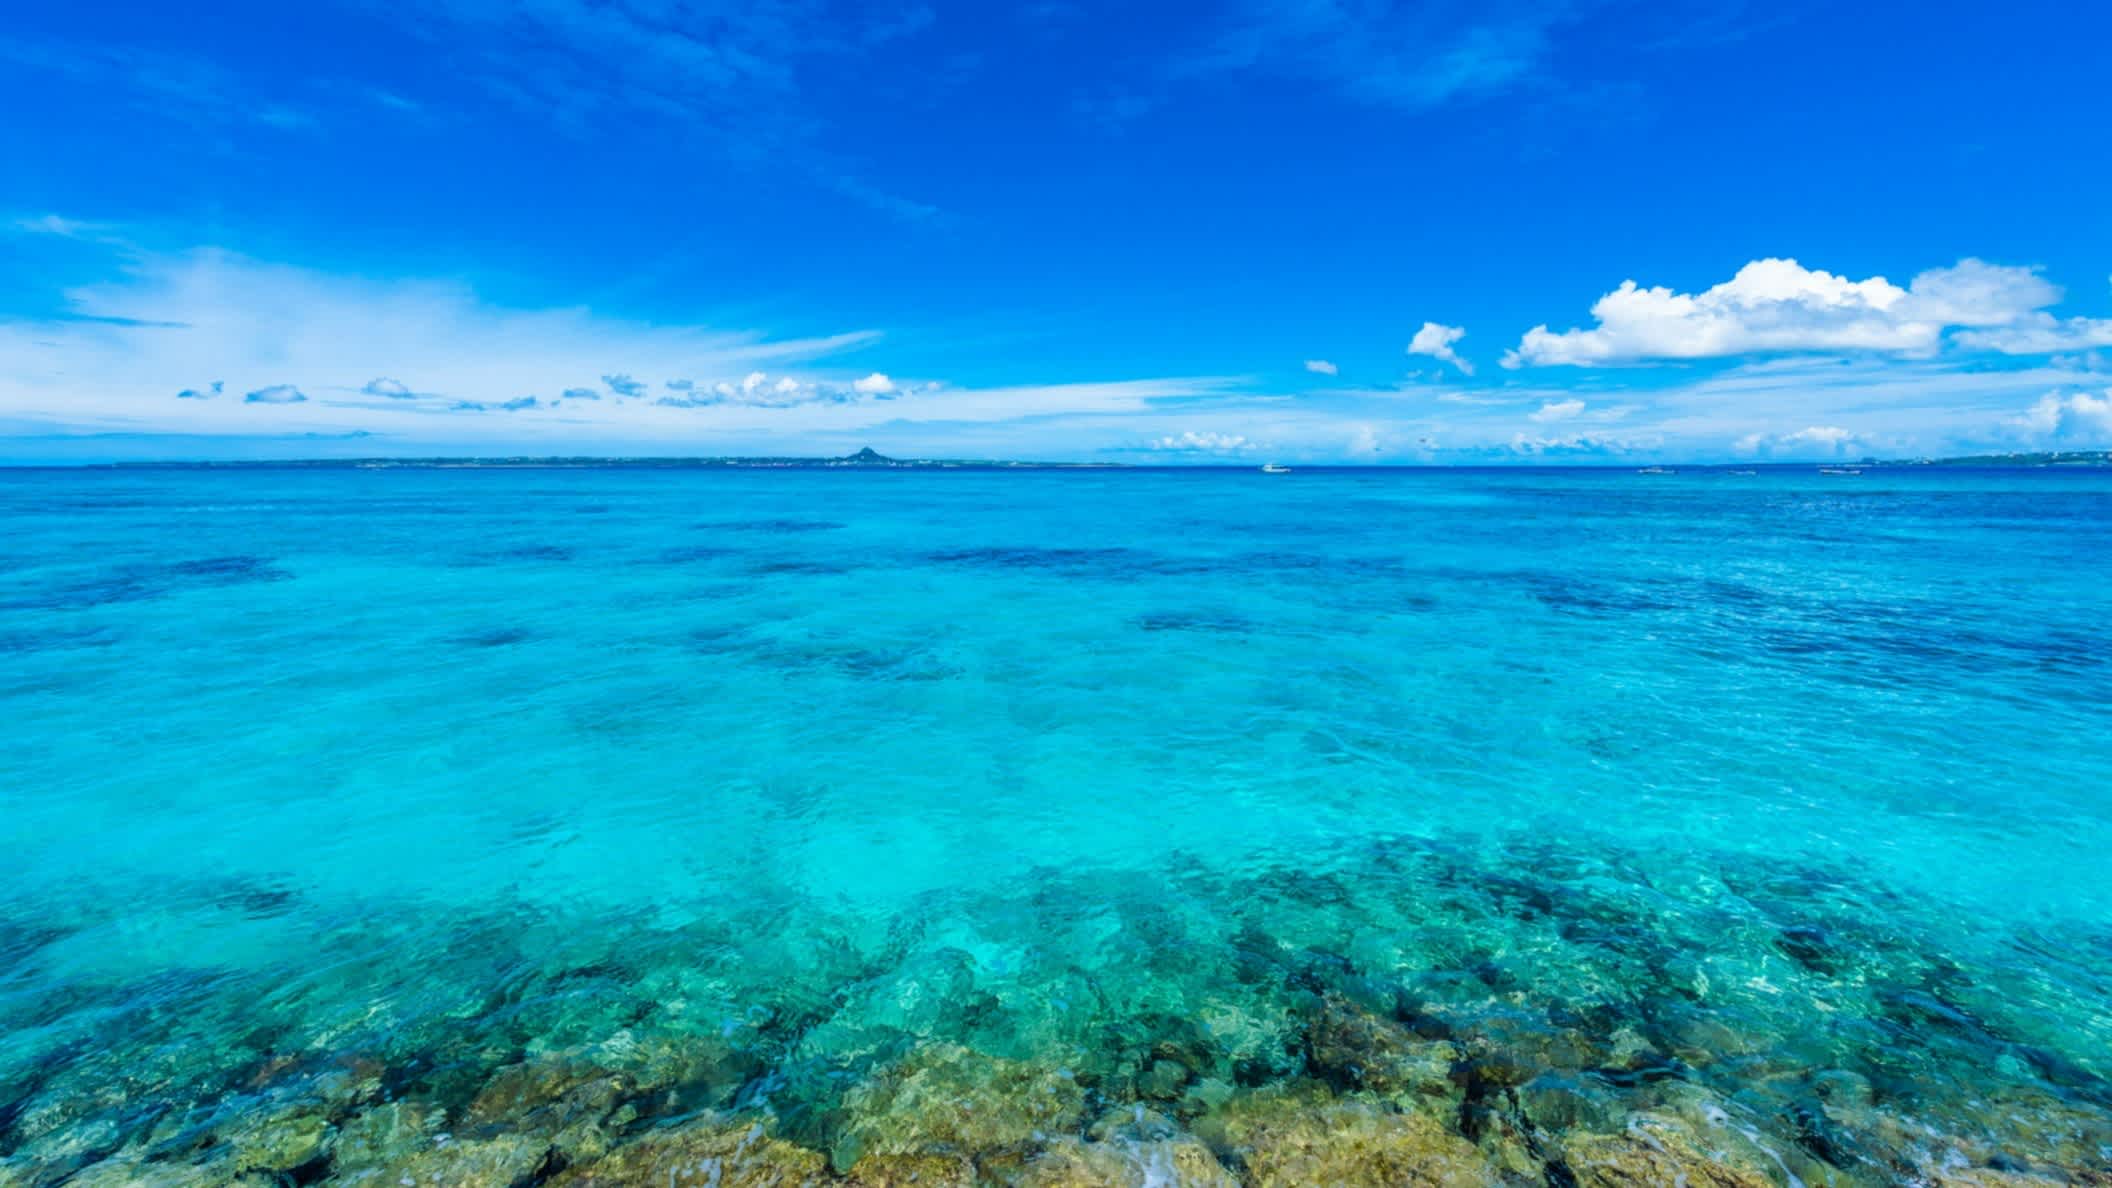 Vue sur la mer bleu turquoise de la plage d'Emeraude au Japon